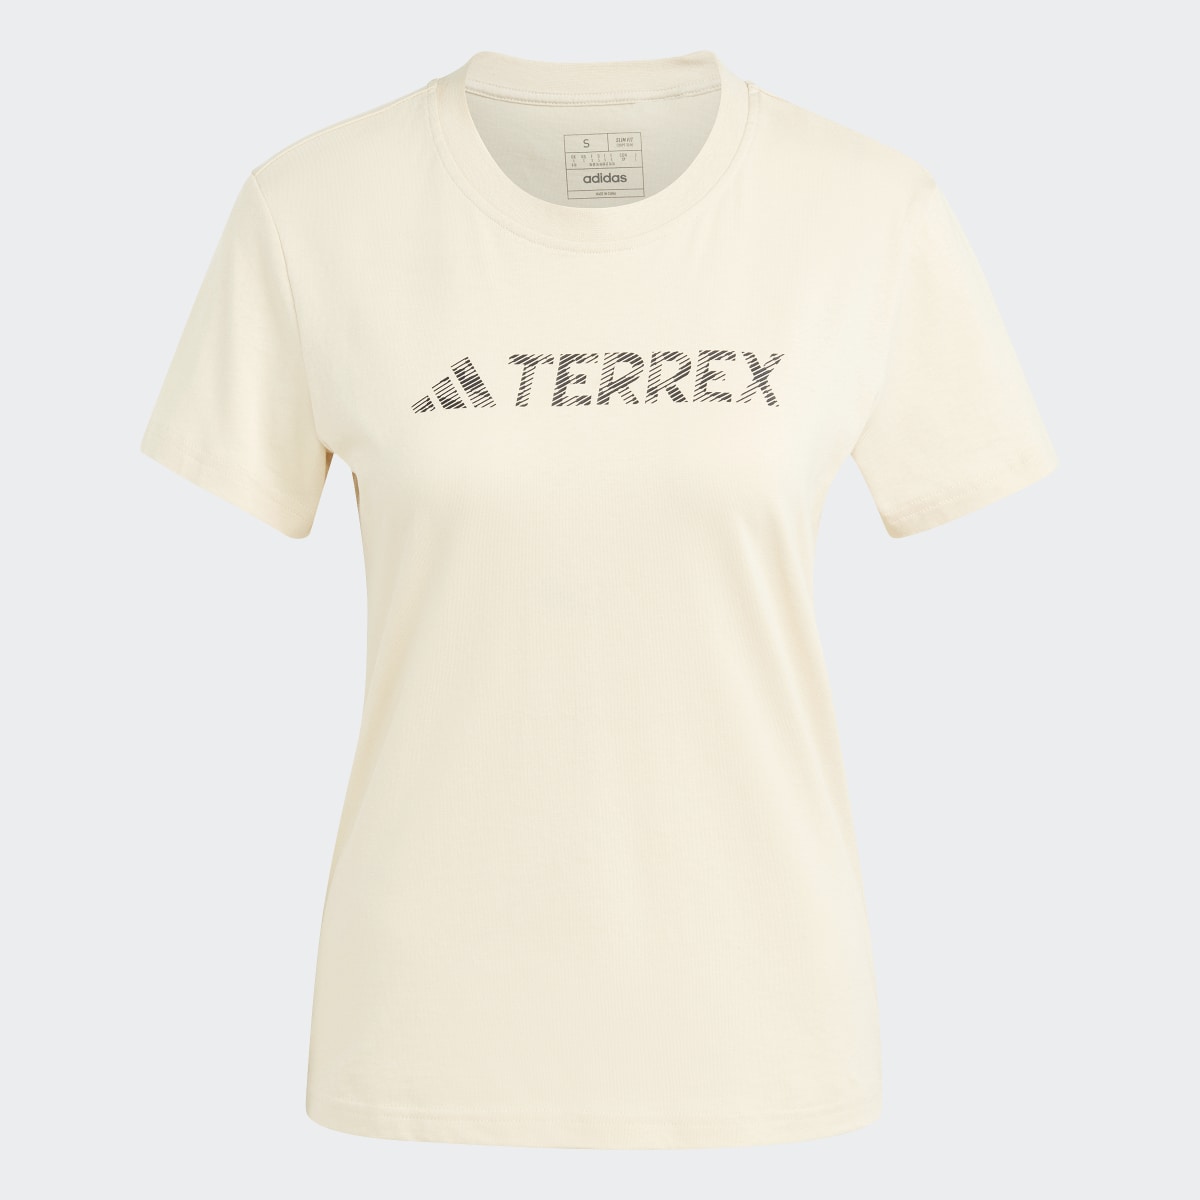 Adidas Terrex Classic Logo Tee. 5